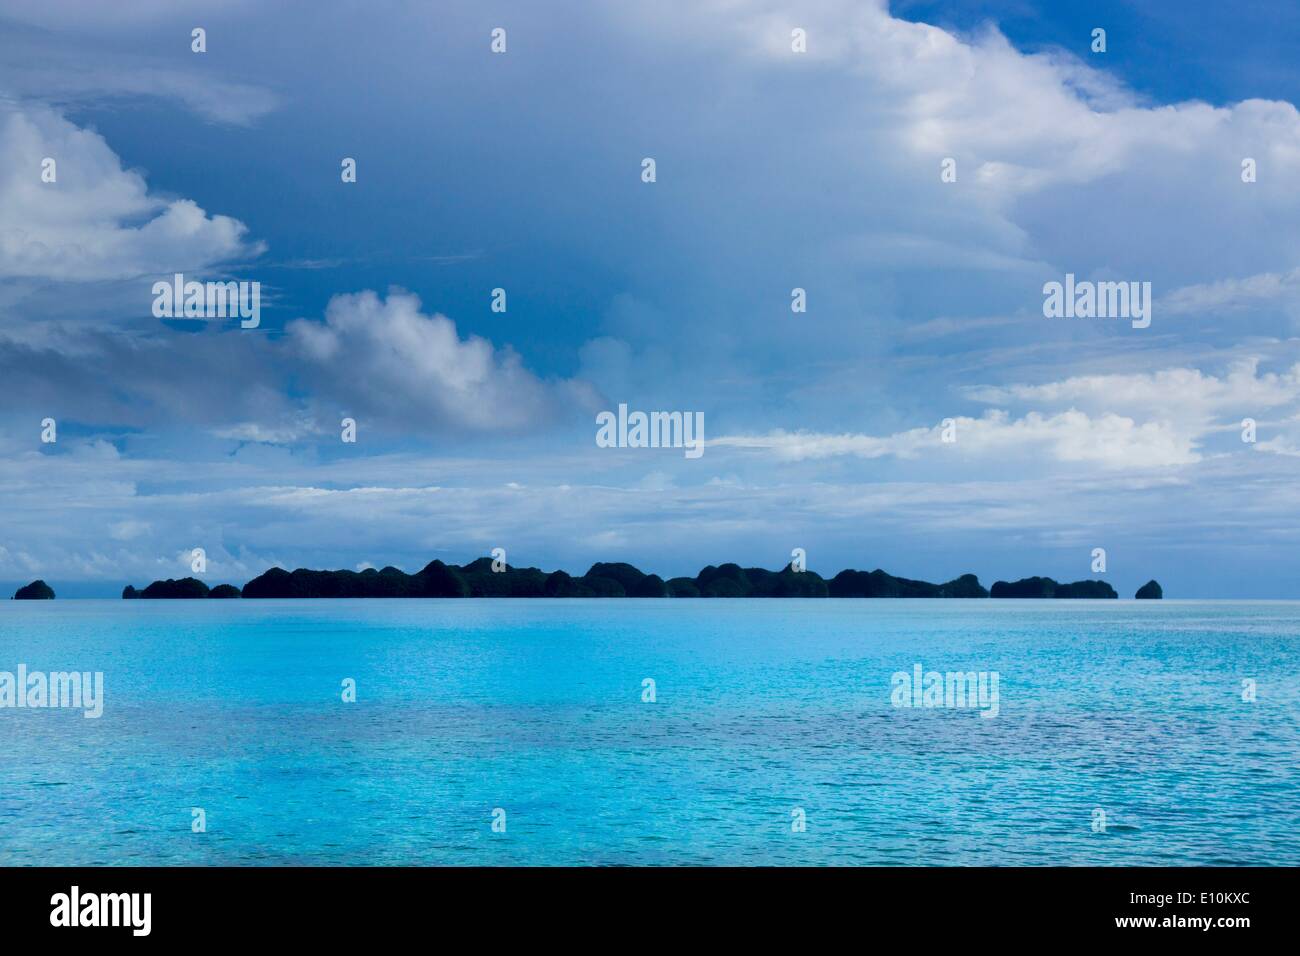 Isole Palau, Palau Micronesia - Aprile 2014 Foto Stock